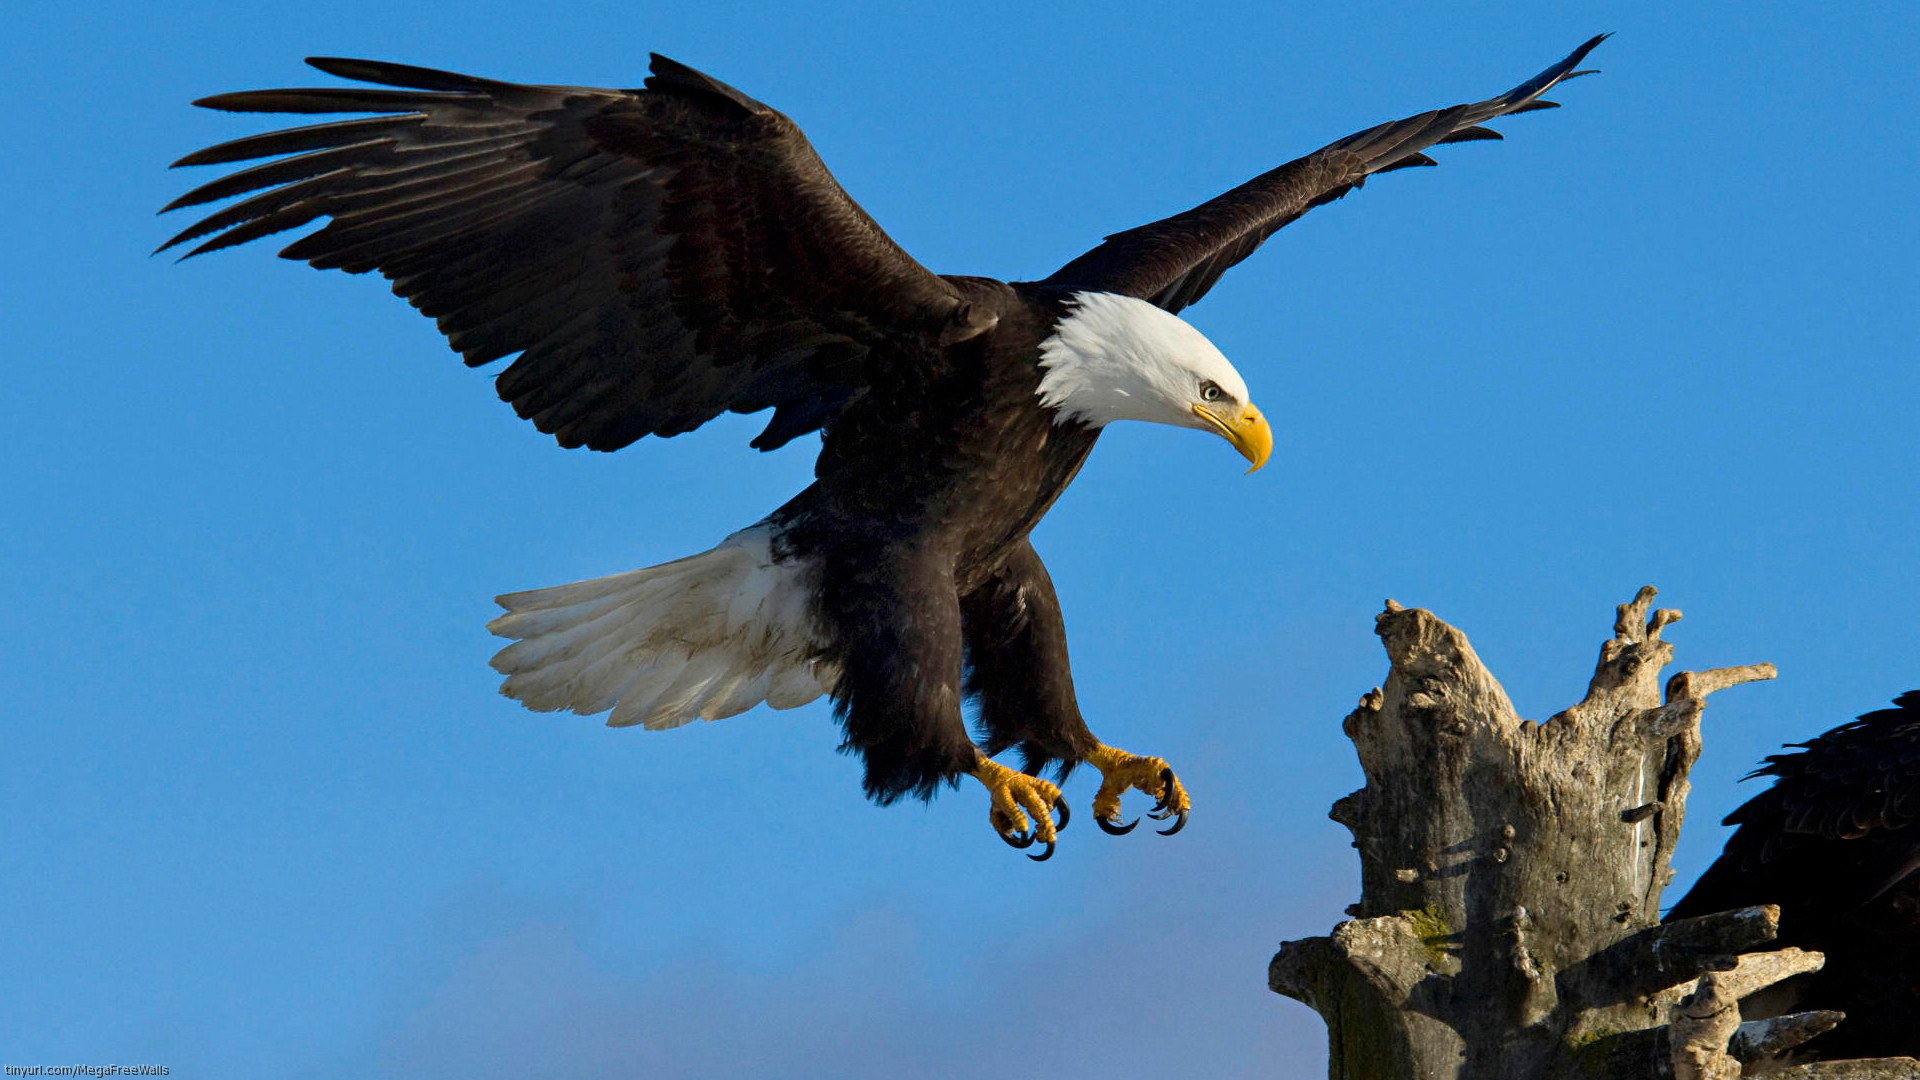 mobile desktop background bald eagle and flag pics download